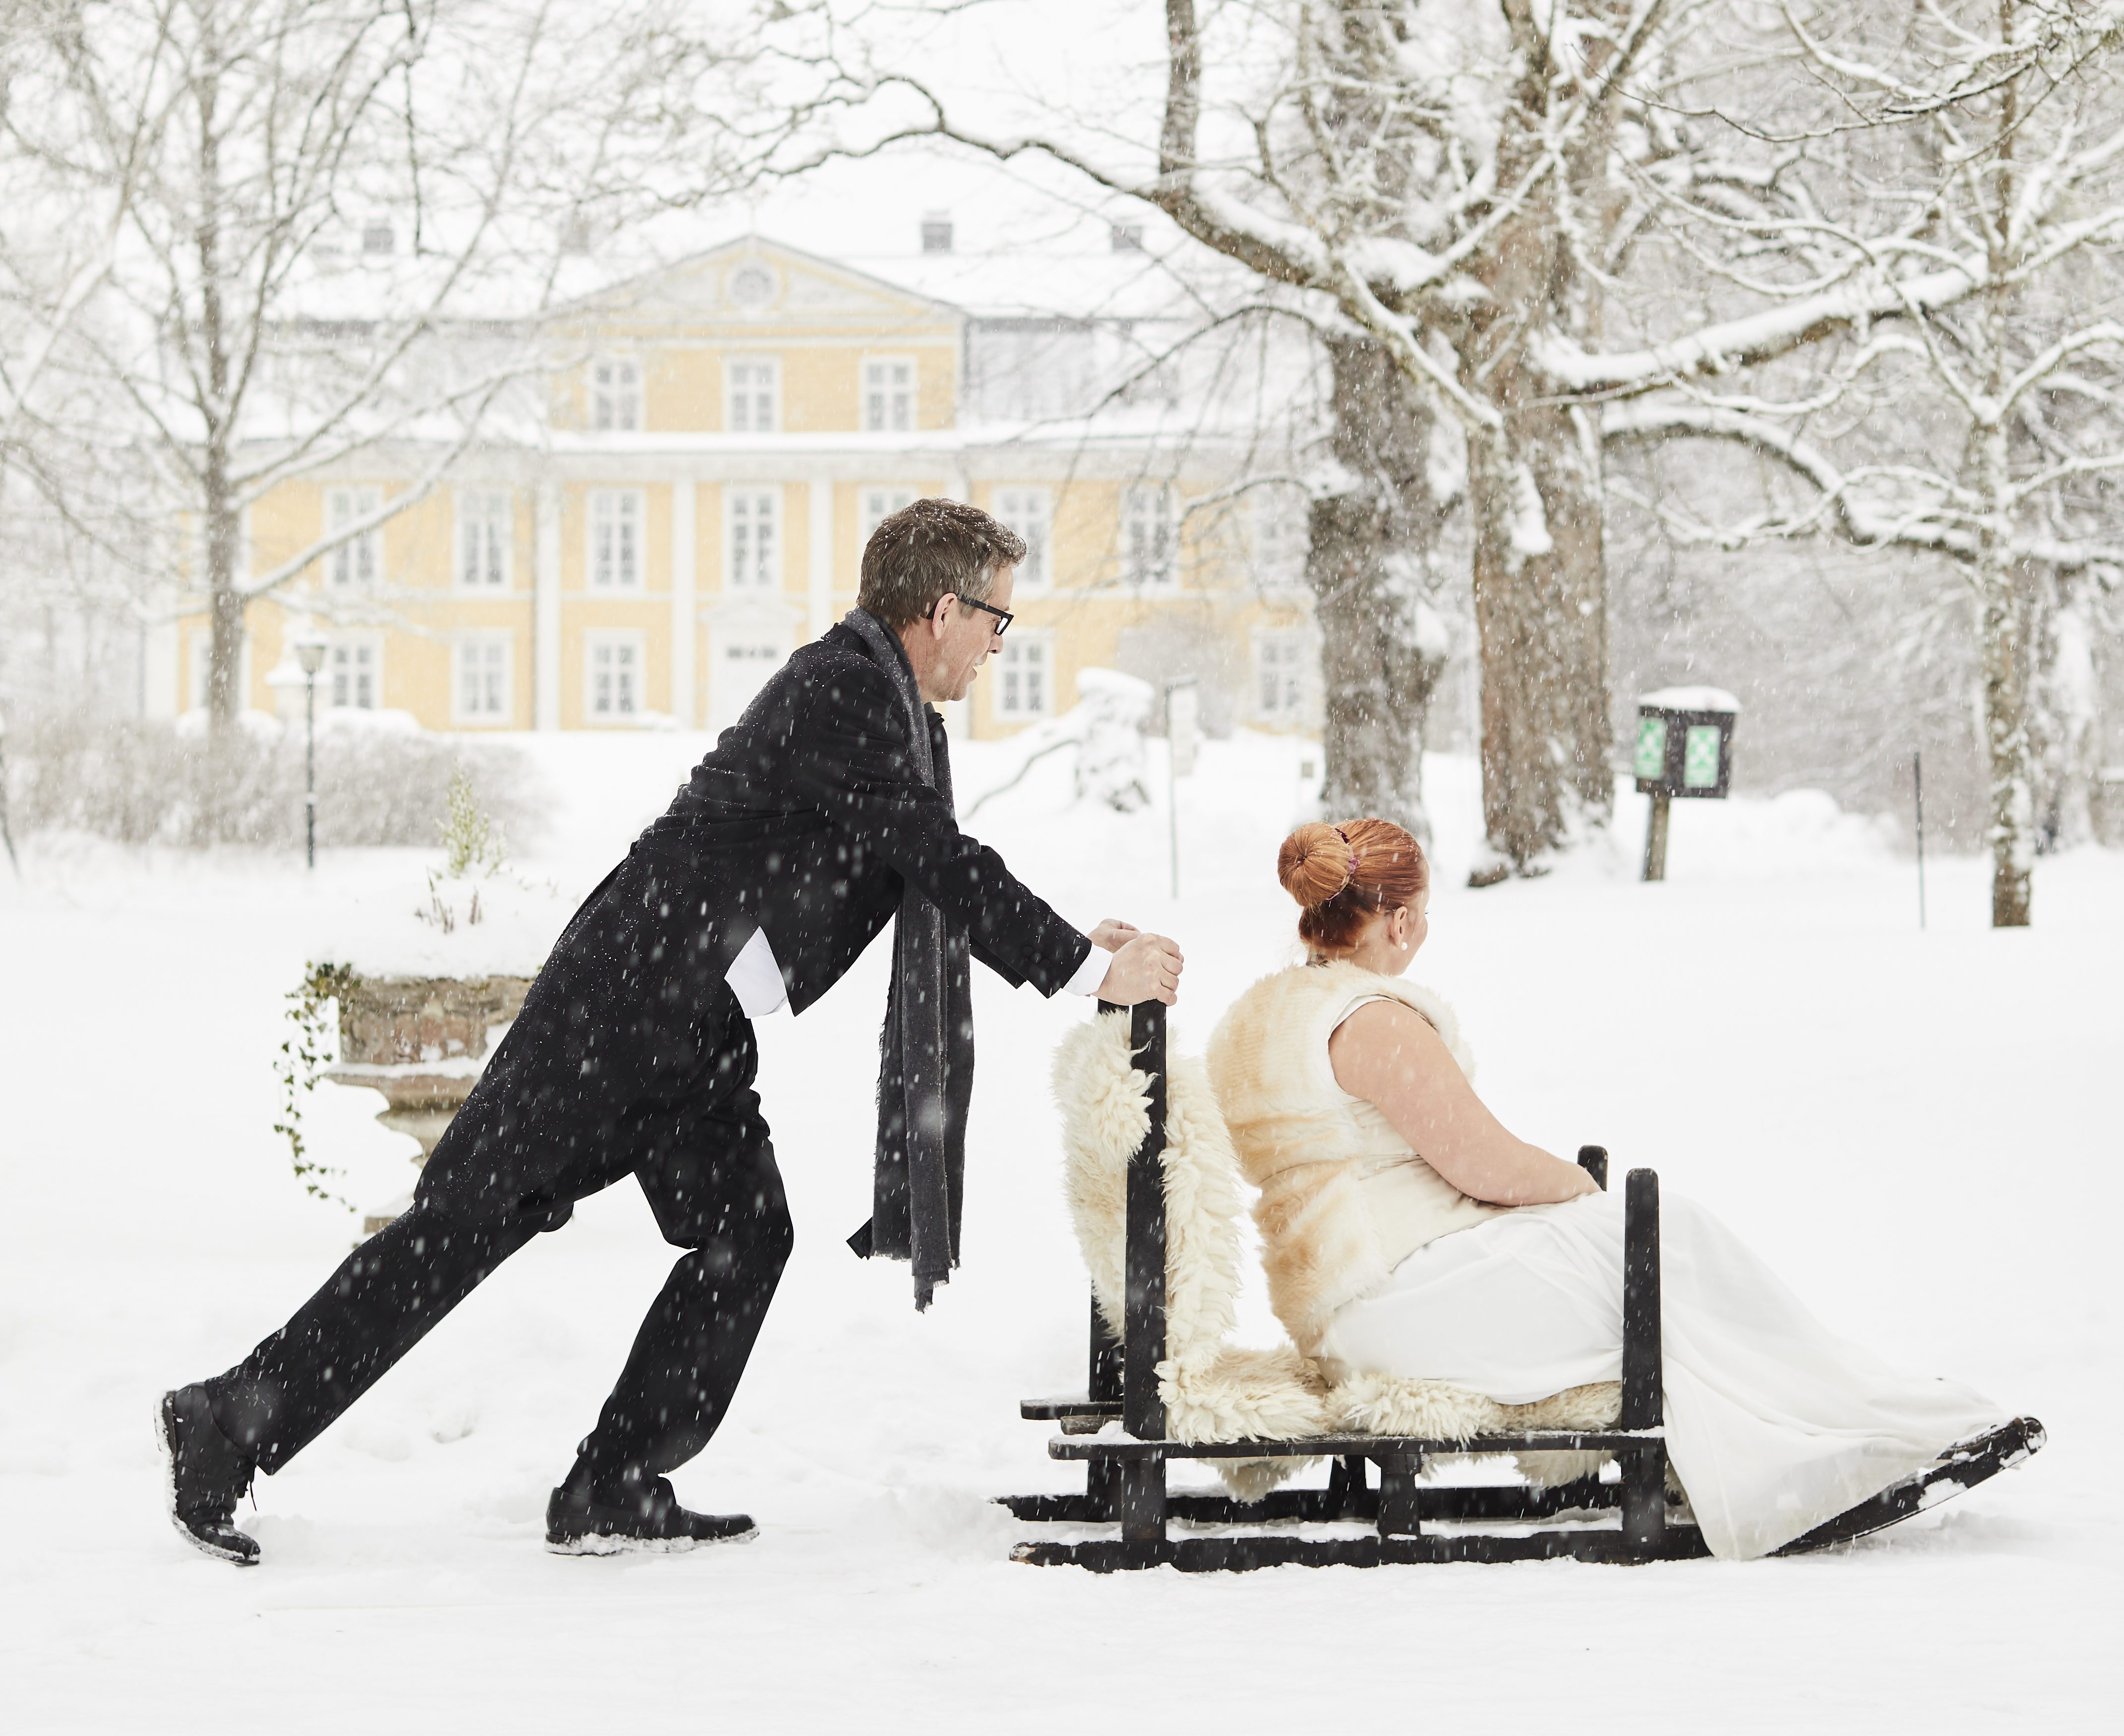 Weddings at Svartå Manor - Visit Raseborg